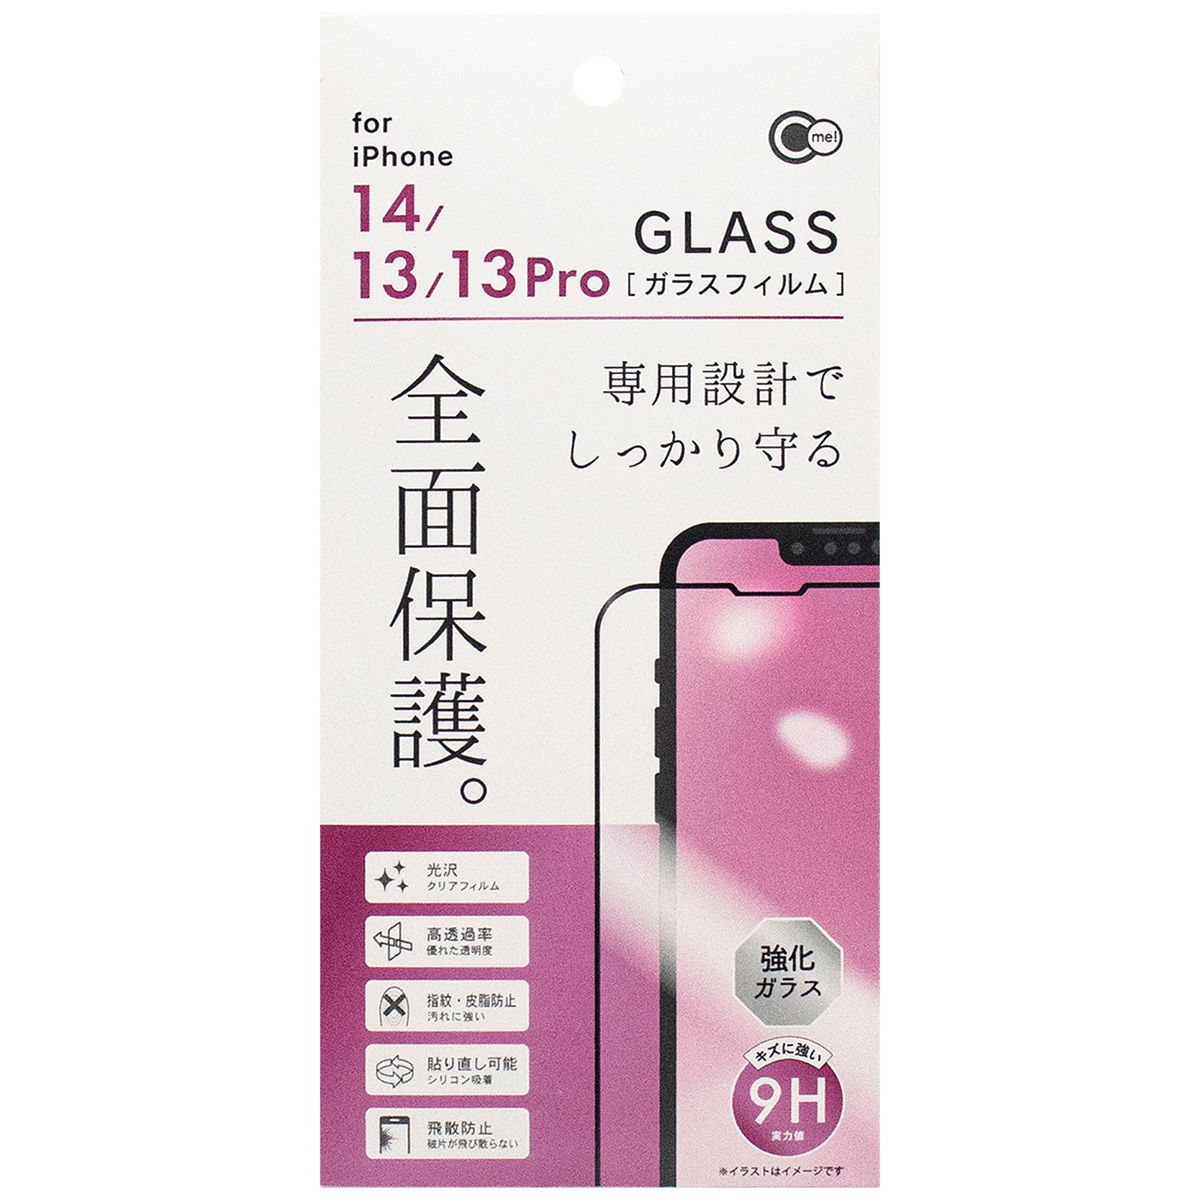 iP14 13 13Pro全面保護ガラスフィルム 362276